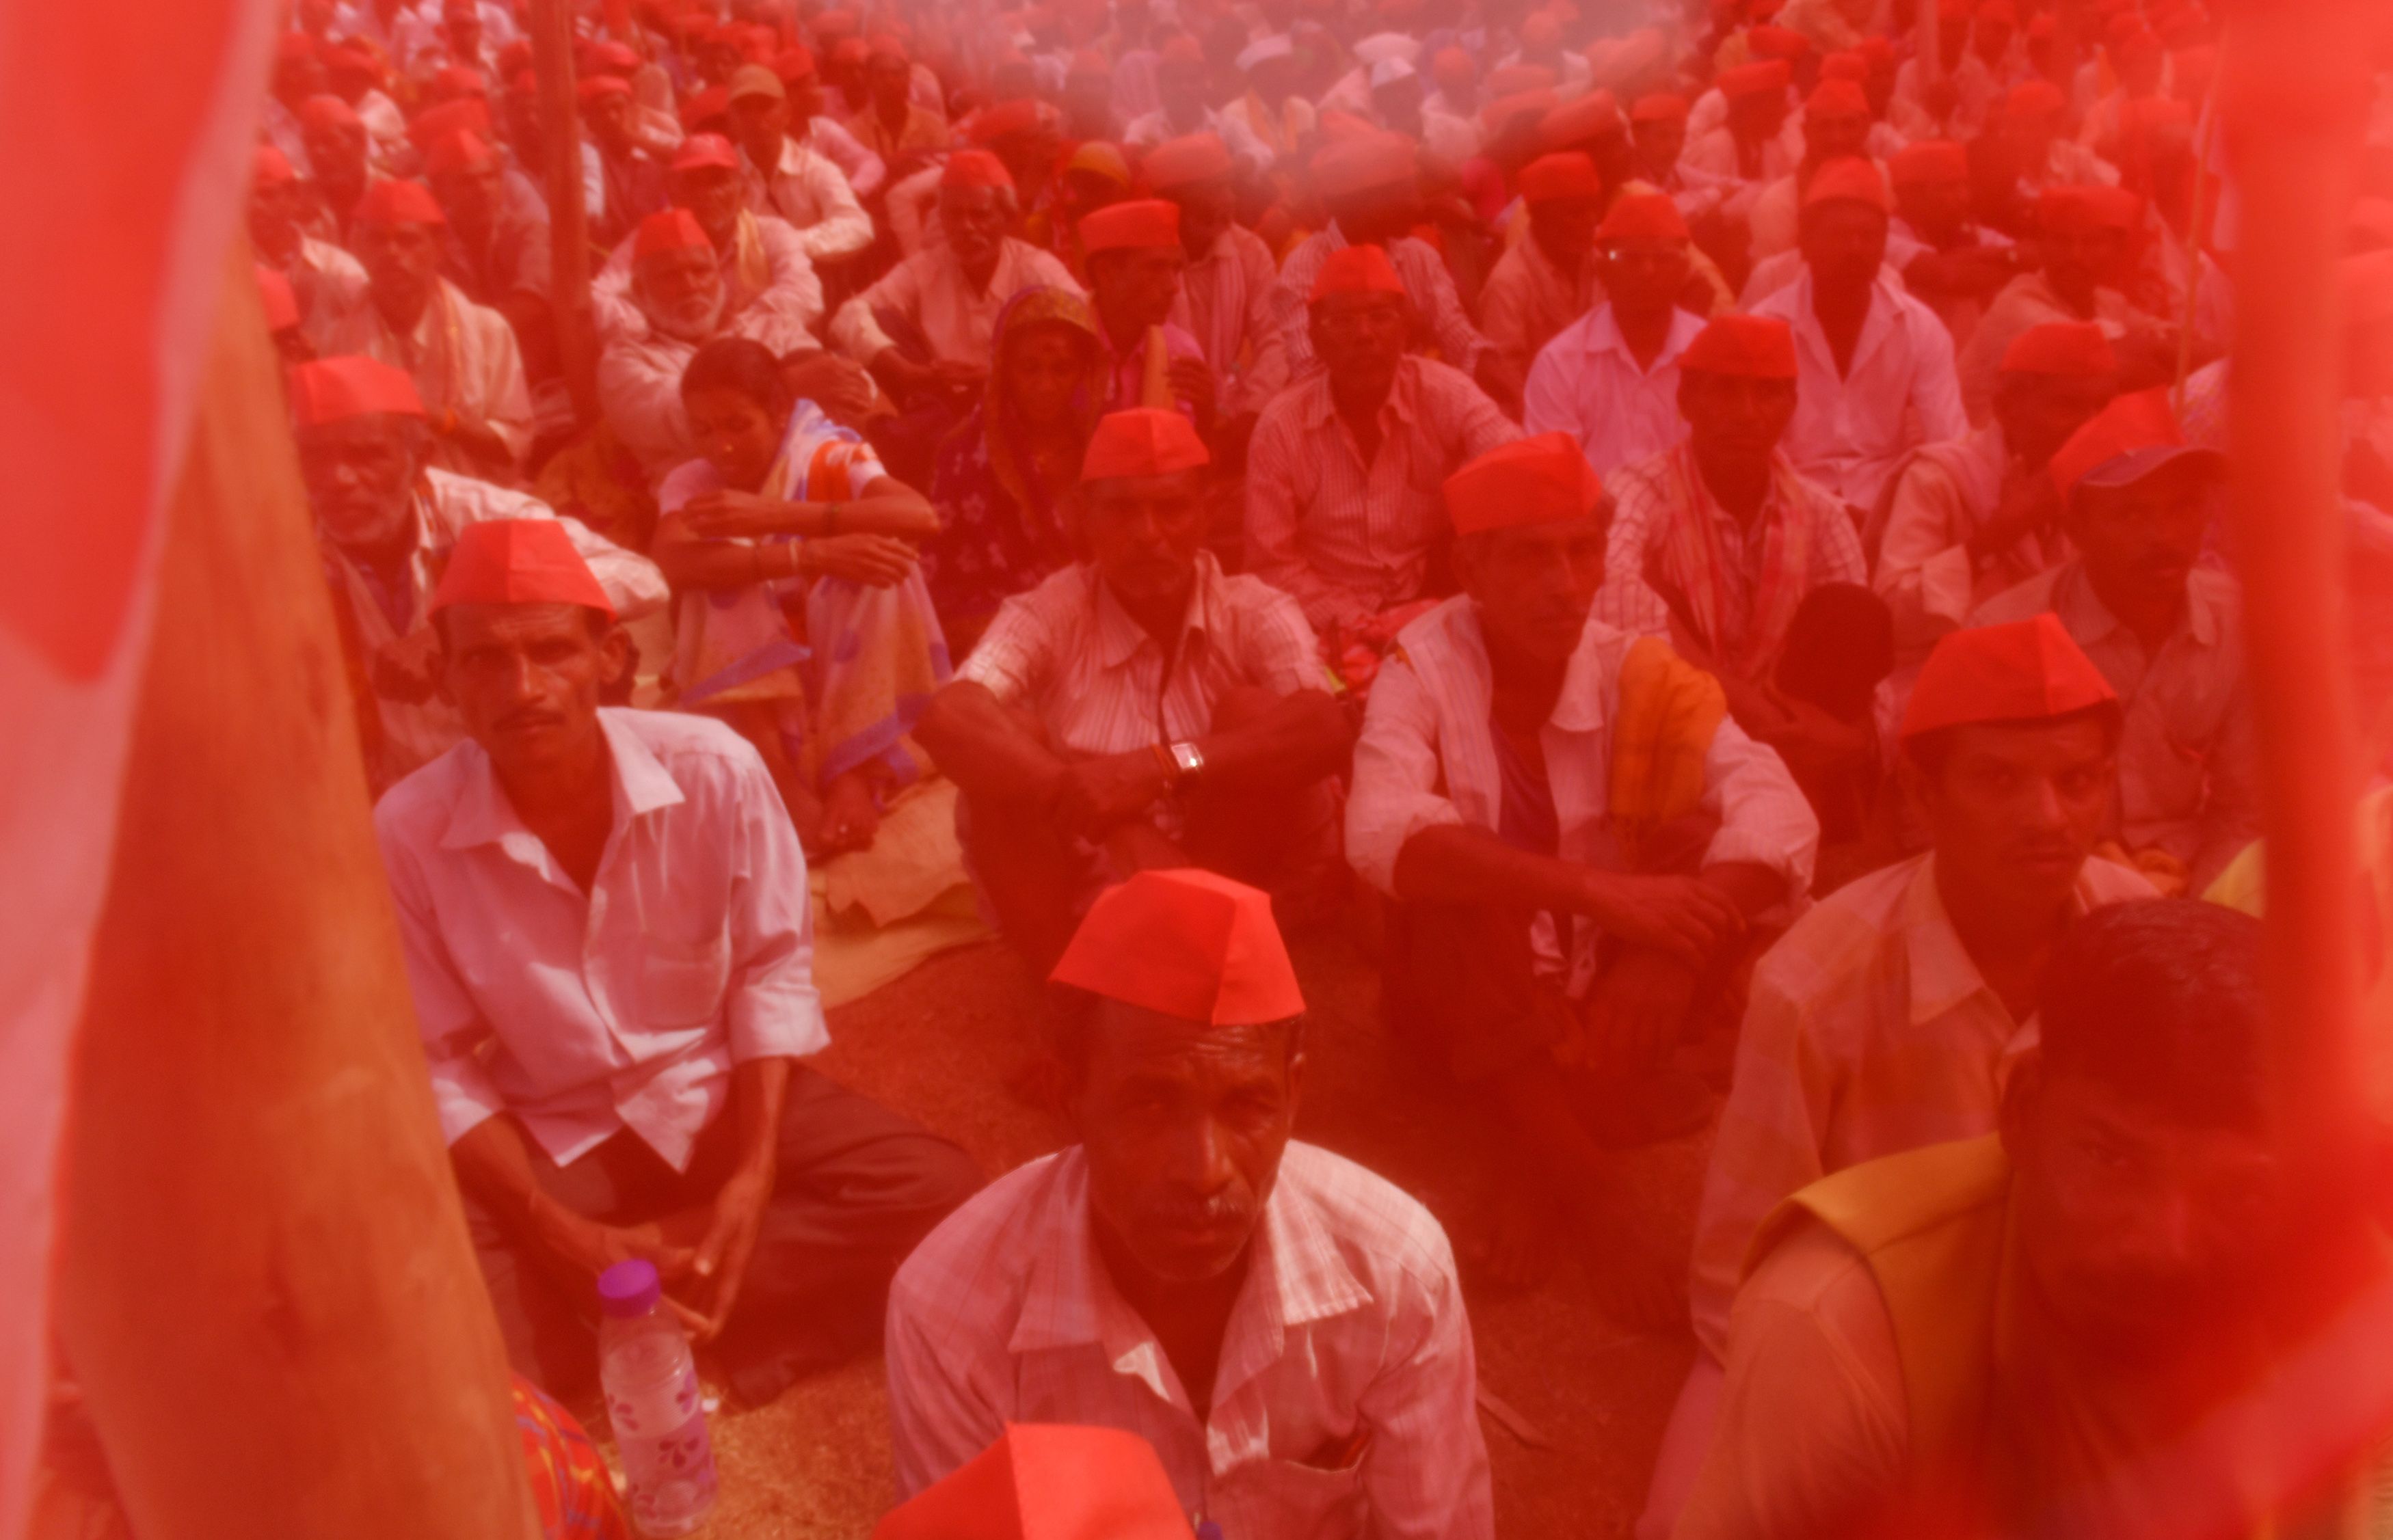 المزارعون الهنود يرتدون قبعات حمراء